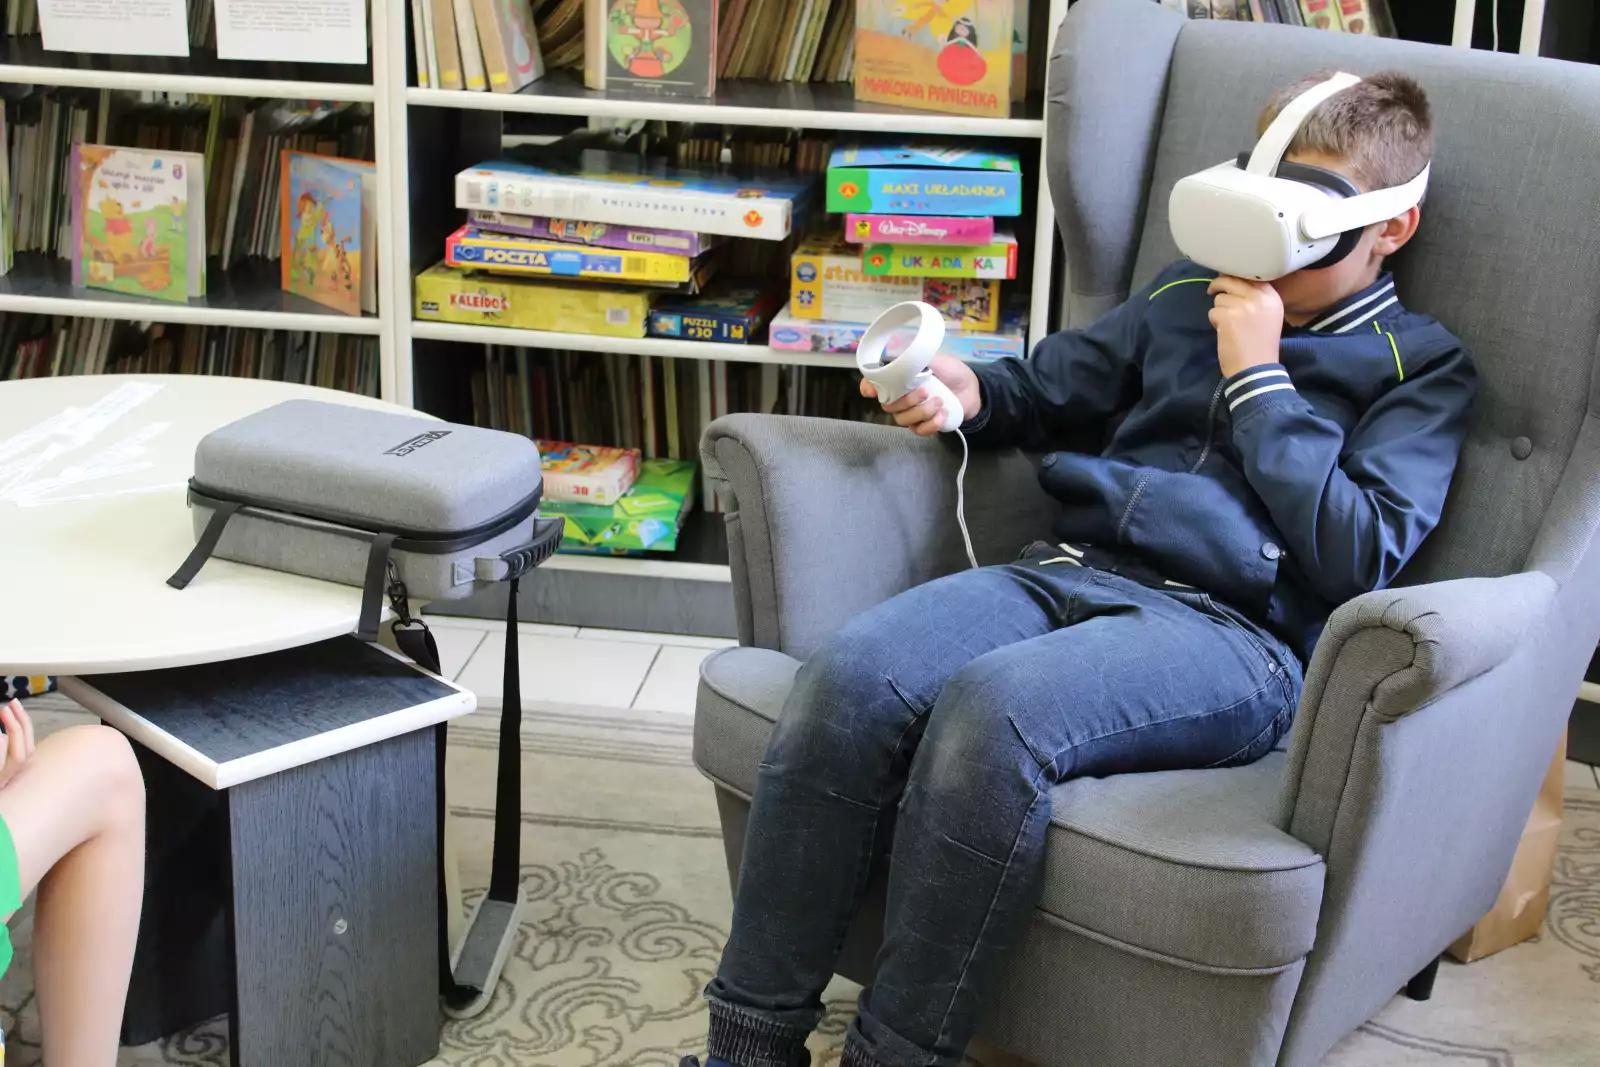 Uczeń siedzi w fotelu. Na głowie ma okulary VR, a w ręce kontroler.